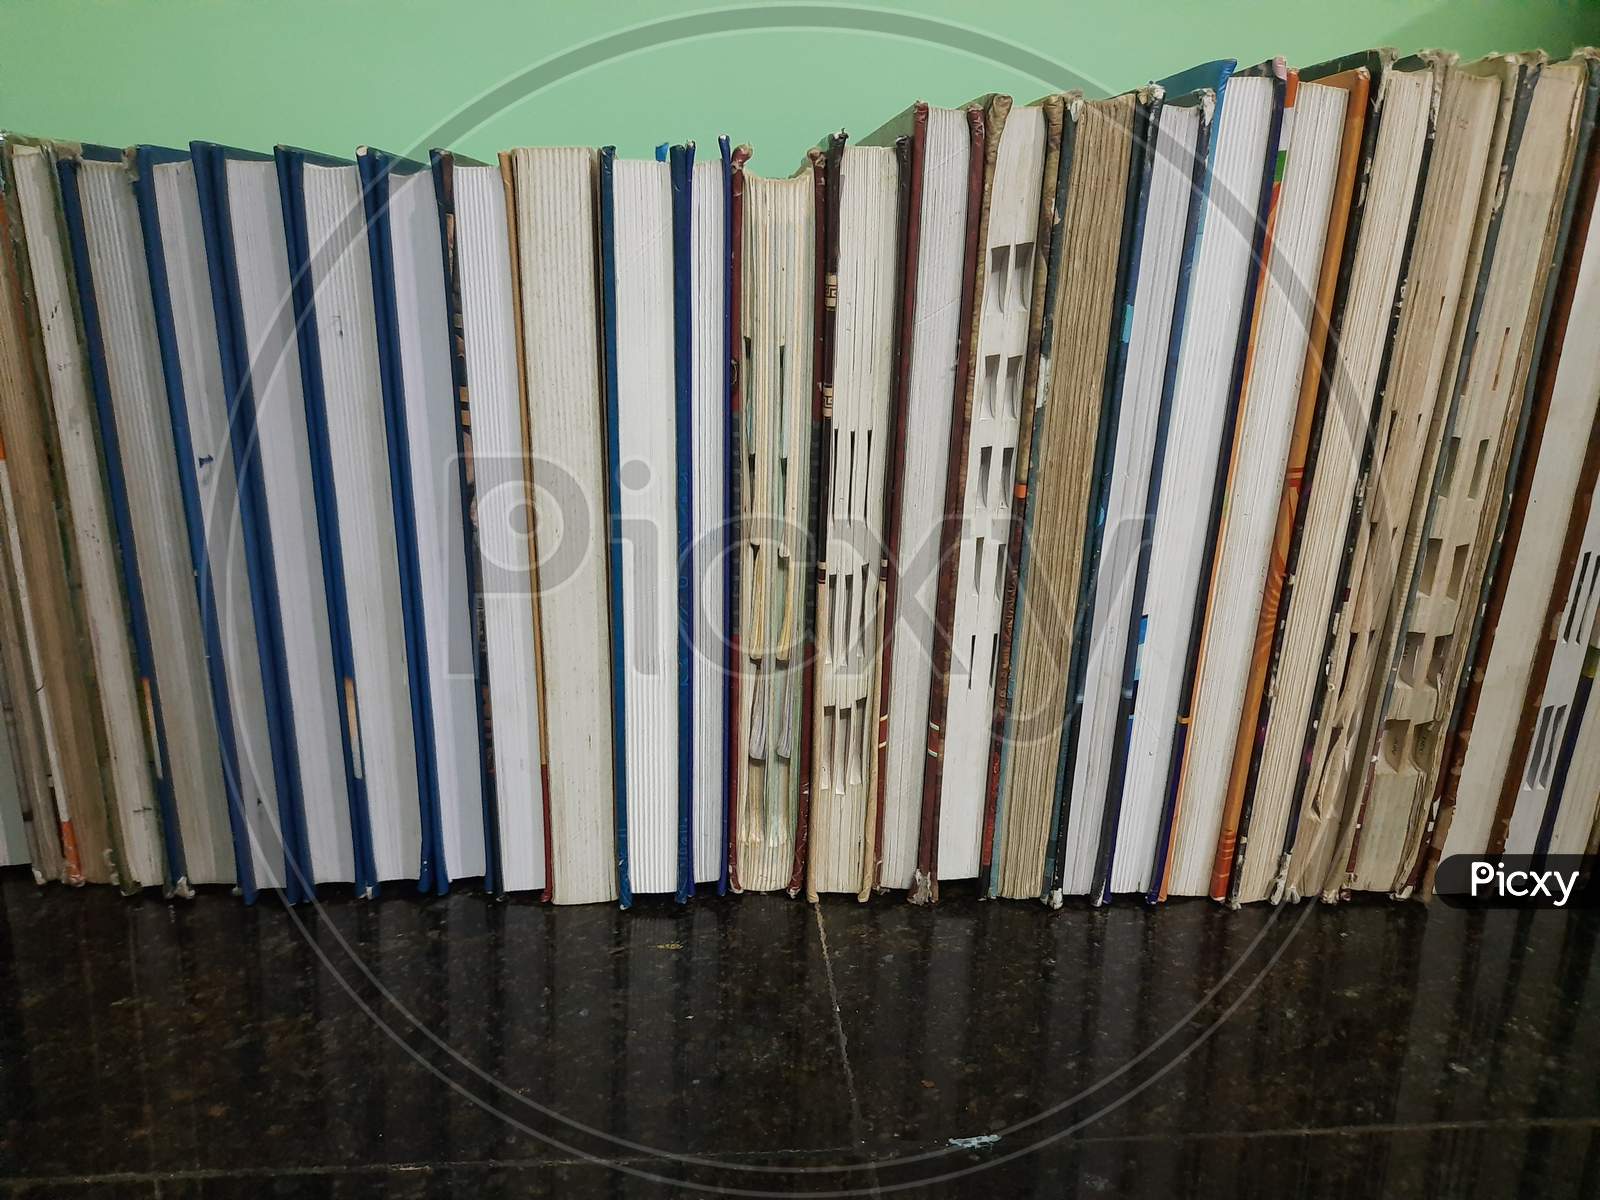 Books arranged in ascending order